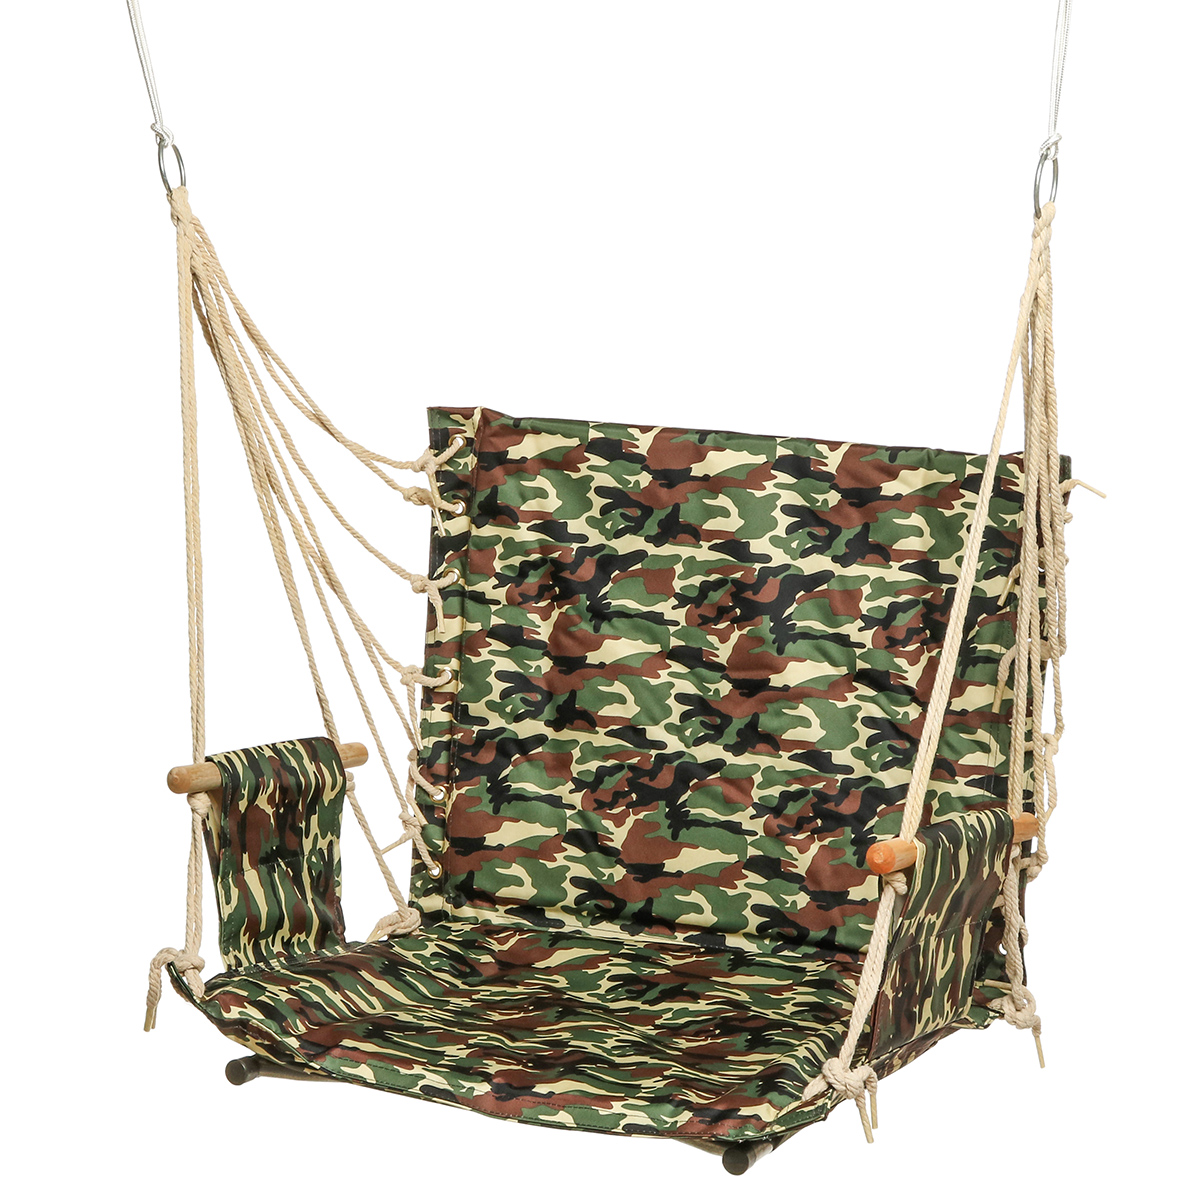 Outdoor-Hanging-Chair-Swinging-Hammock-Thicken-Rope-Swing-Seat-For-Home-Indoor-Outdoor-Backyard-Gard-1706887-7